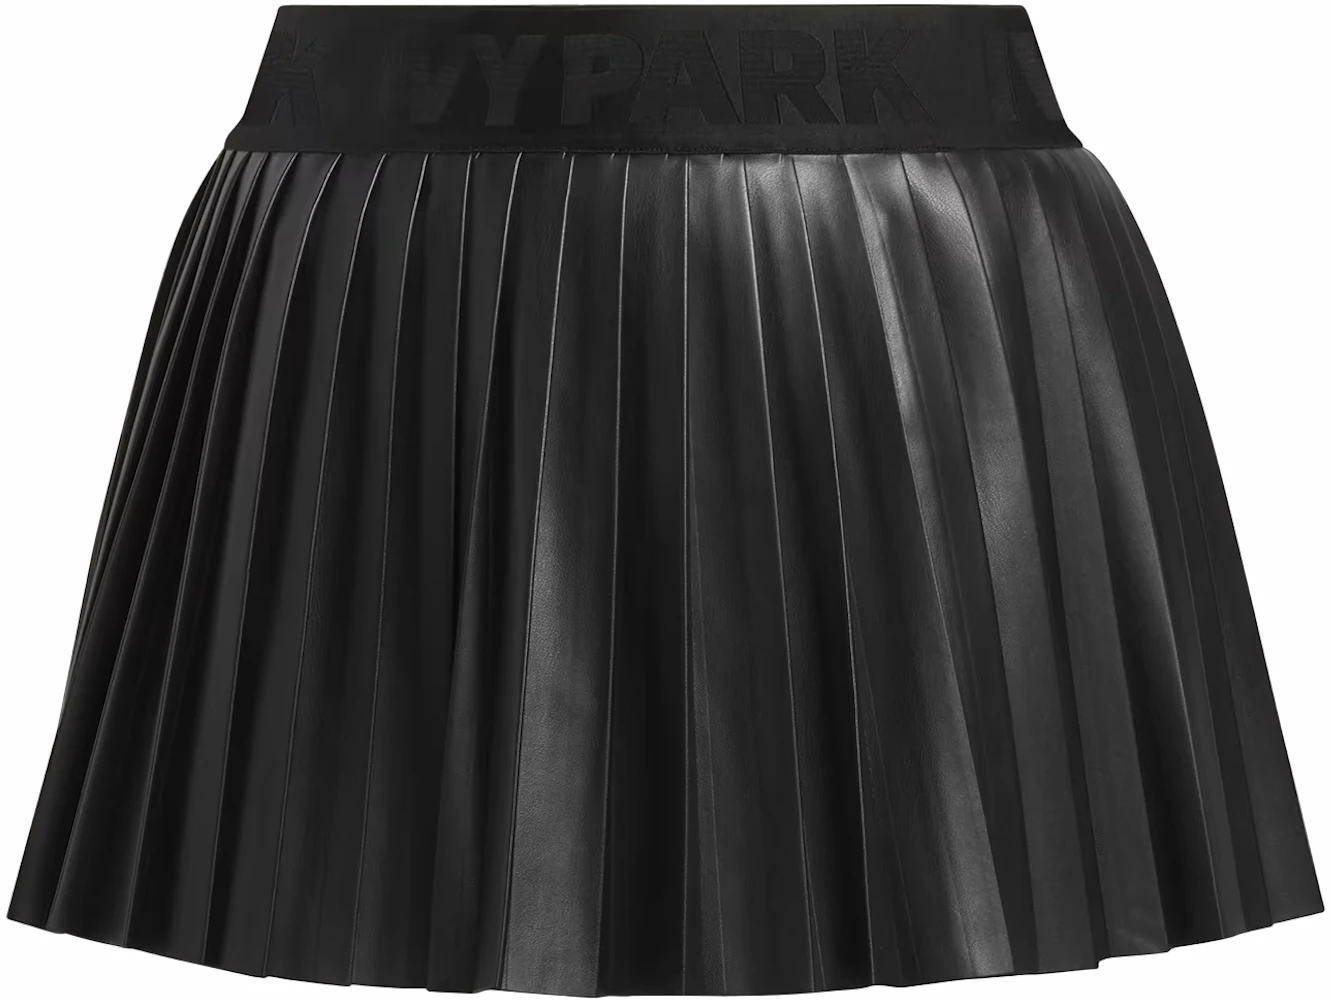 adidas Ivy Park Leather Pleated Mini Skirt (Plus Size) Black - FW23 - US